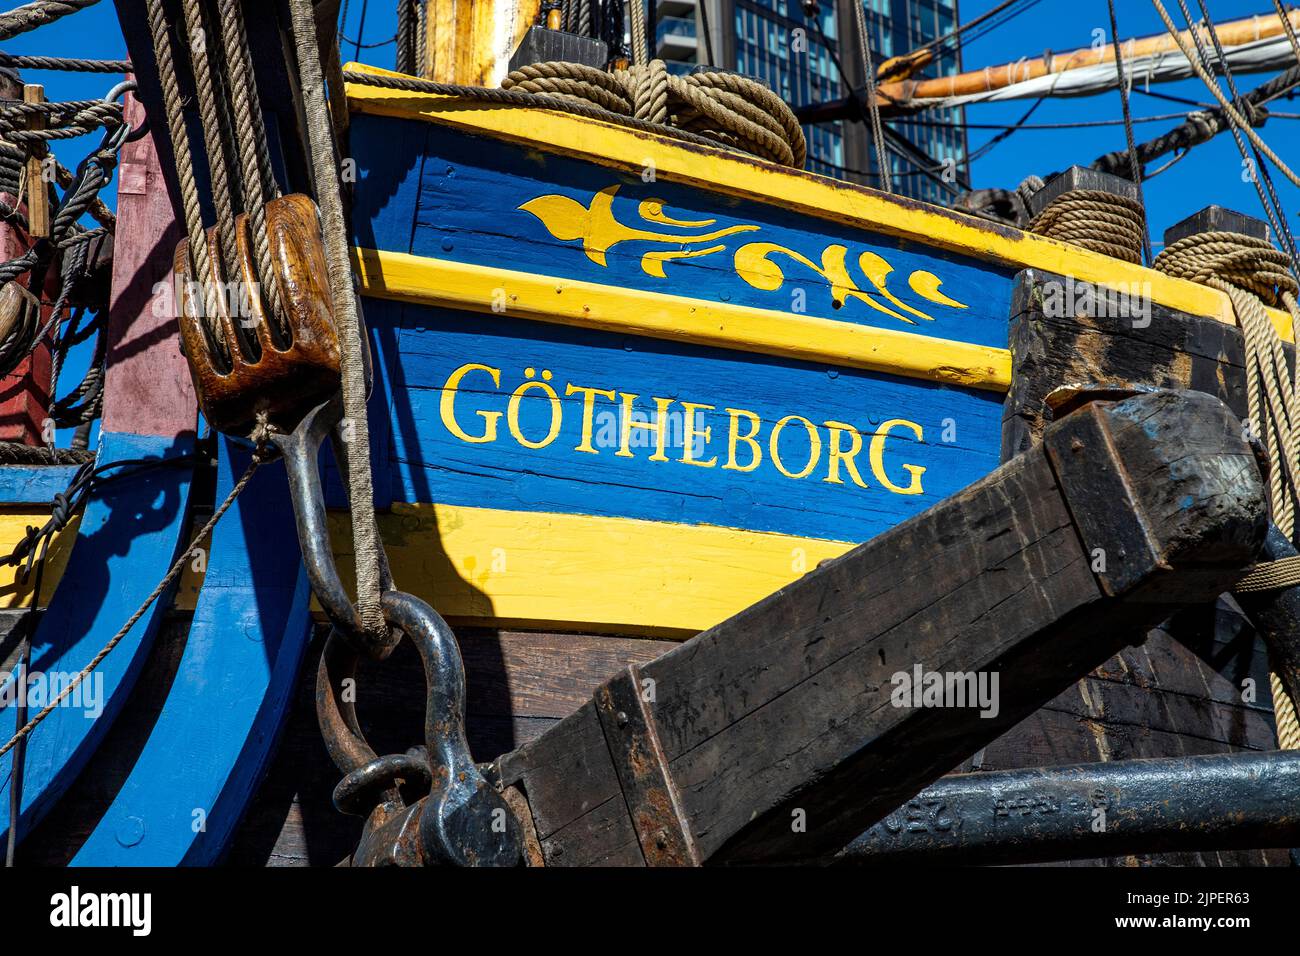 10 de agosto de 2022, Londres, Reino Unido - Götheborg de Suecia, el barco de madera más grande de navegación oceánica atracado en Canary Wharf South Dock en su viaje a Asia Foto de stock